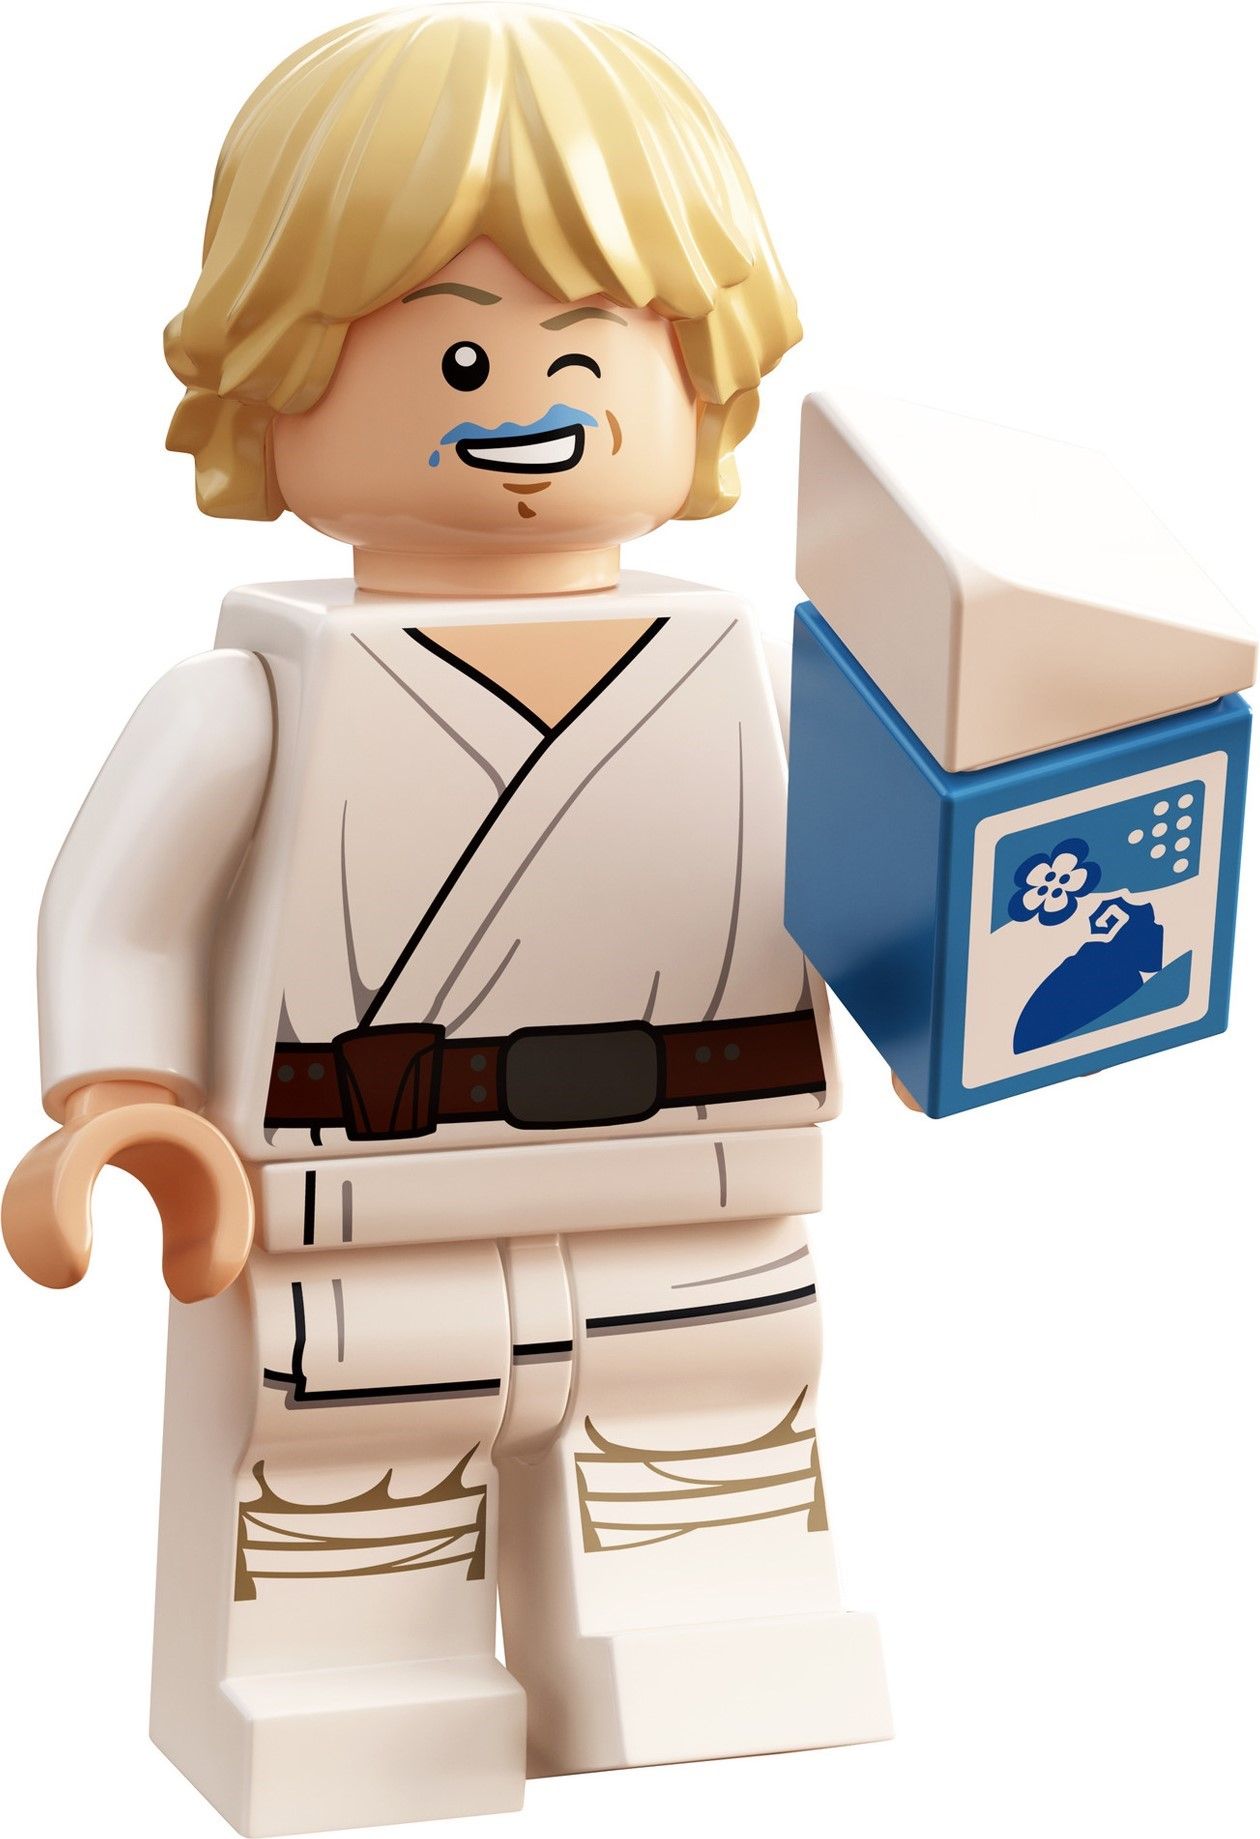 LEGO Star Wars 30625 Luke Skywalker with Blue Milk